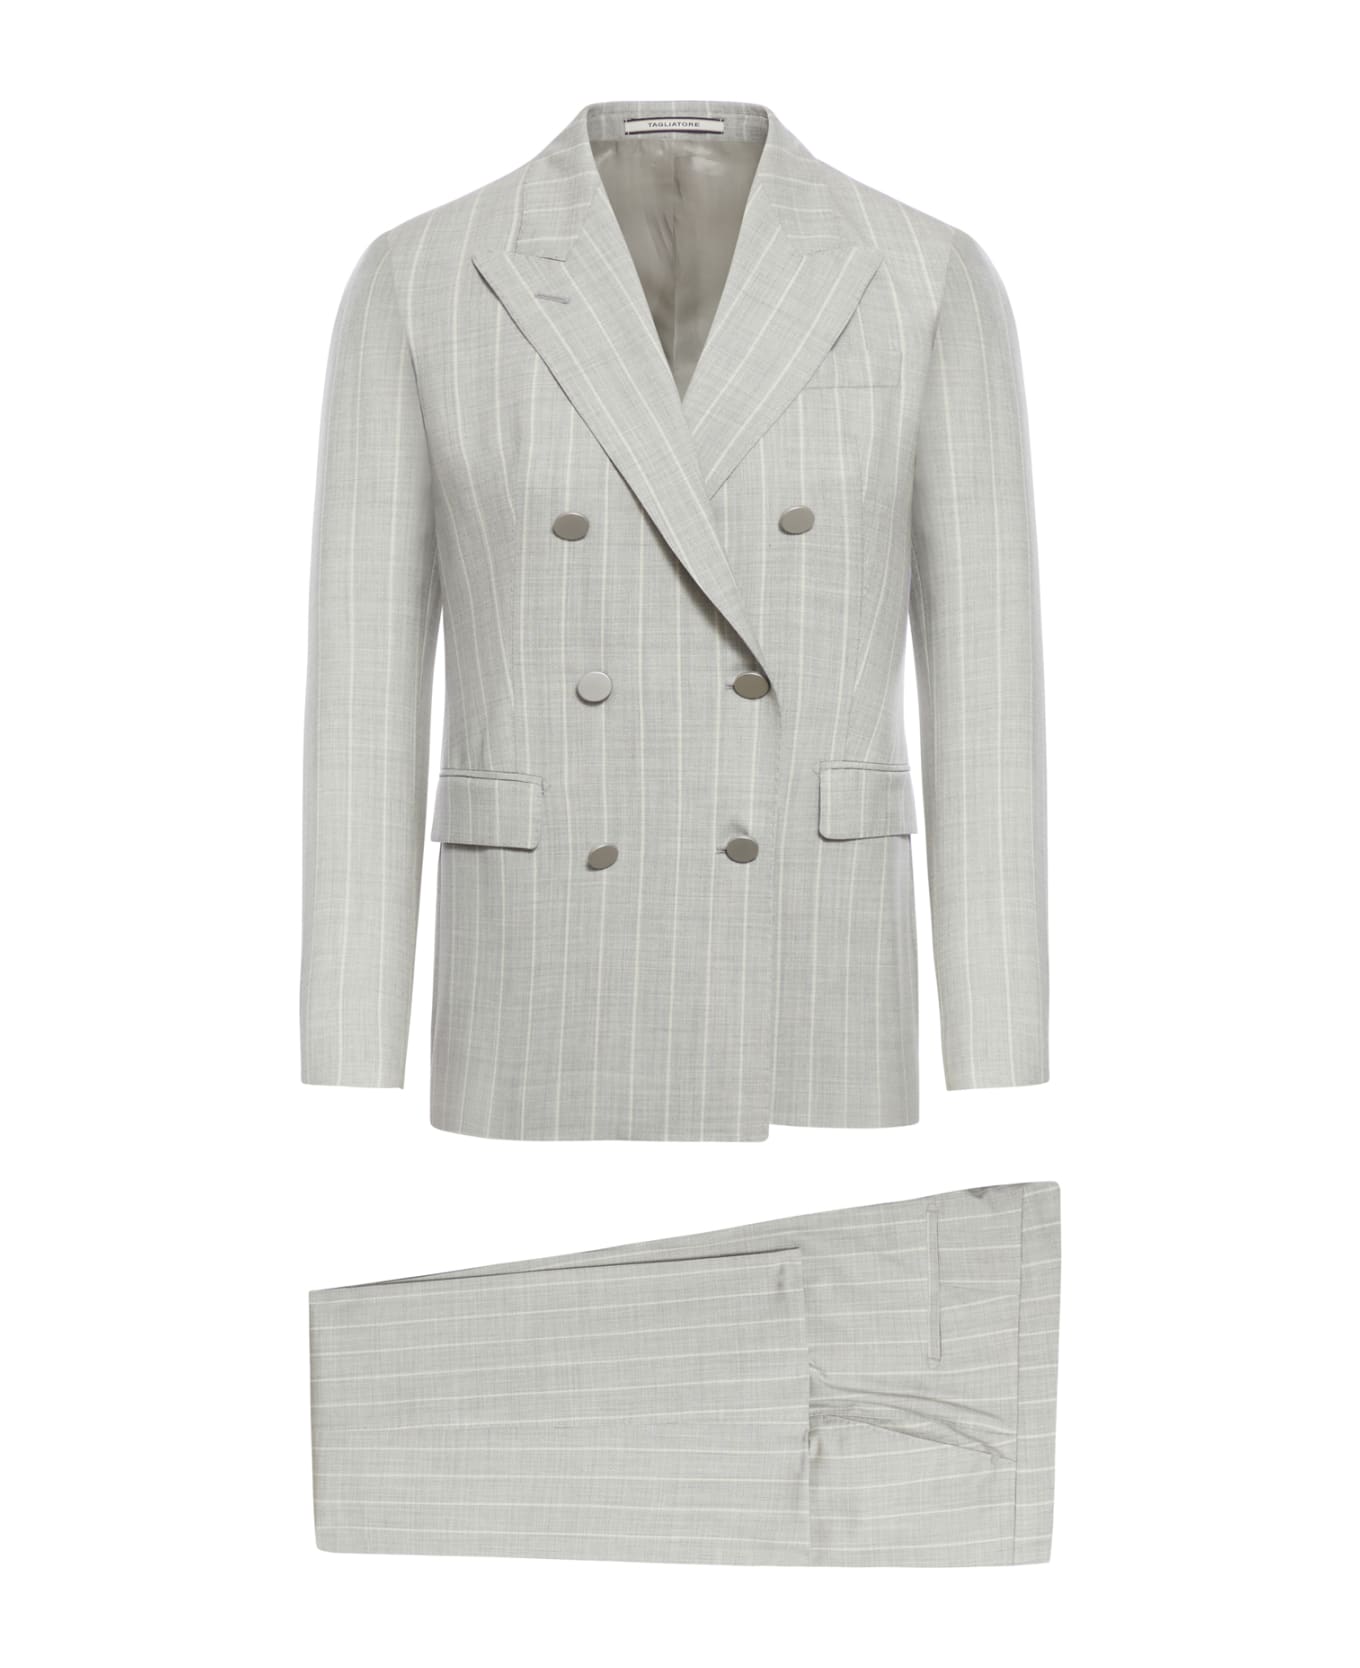 Tagliatore Suit Met150 - Light Grey